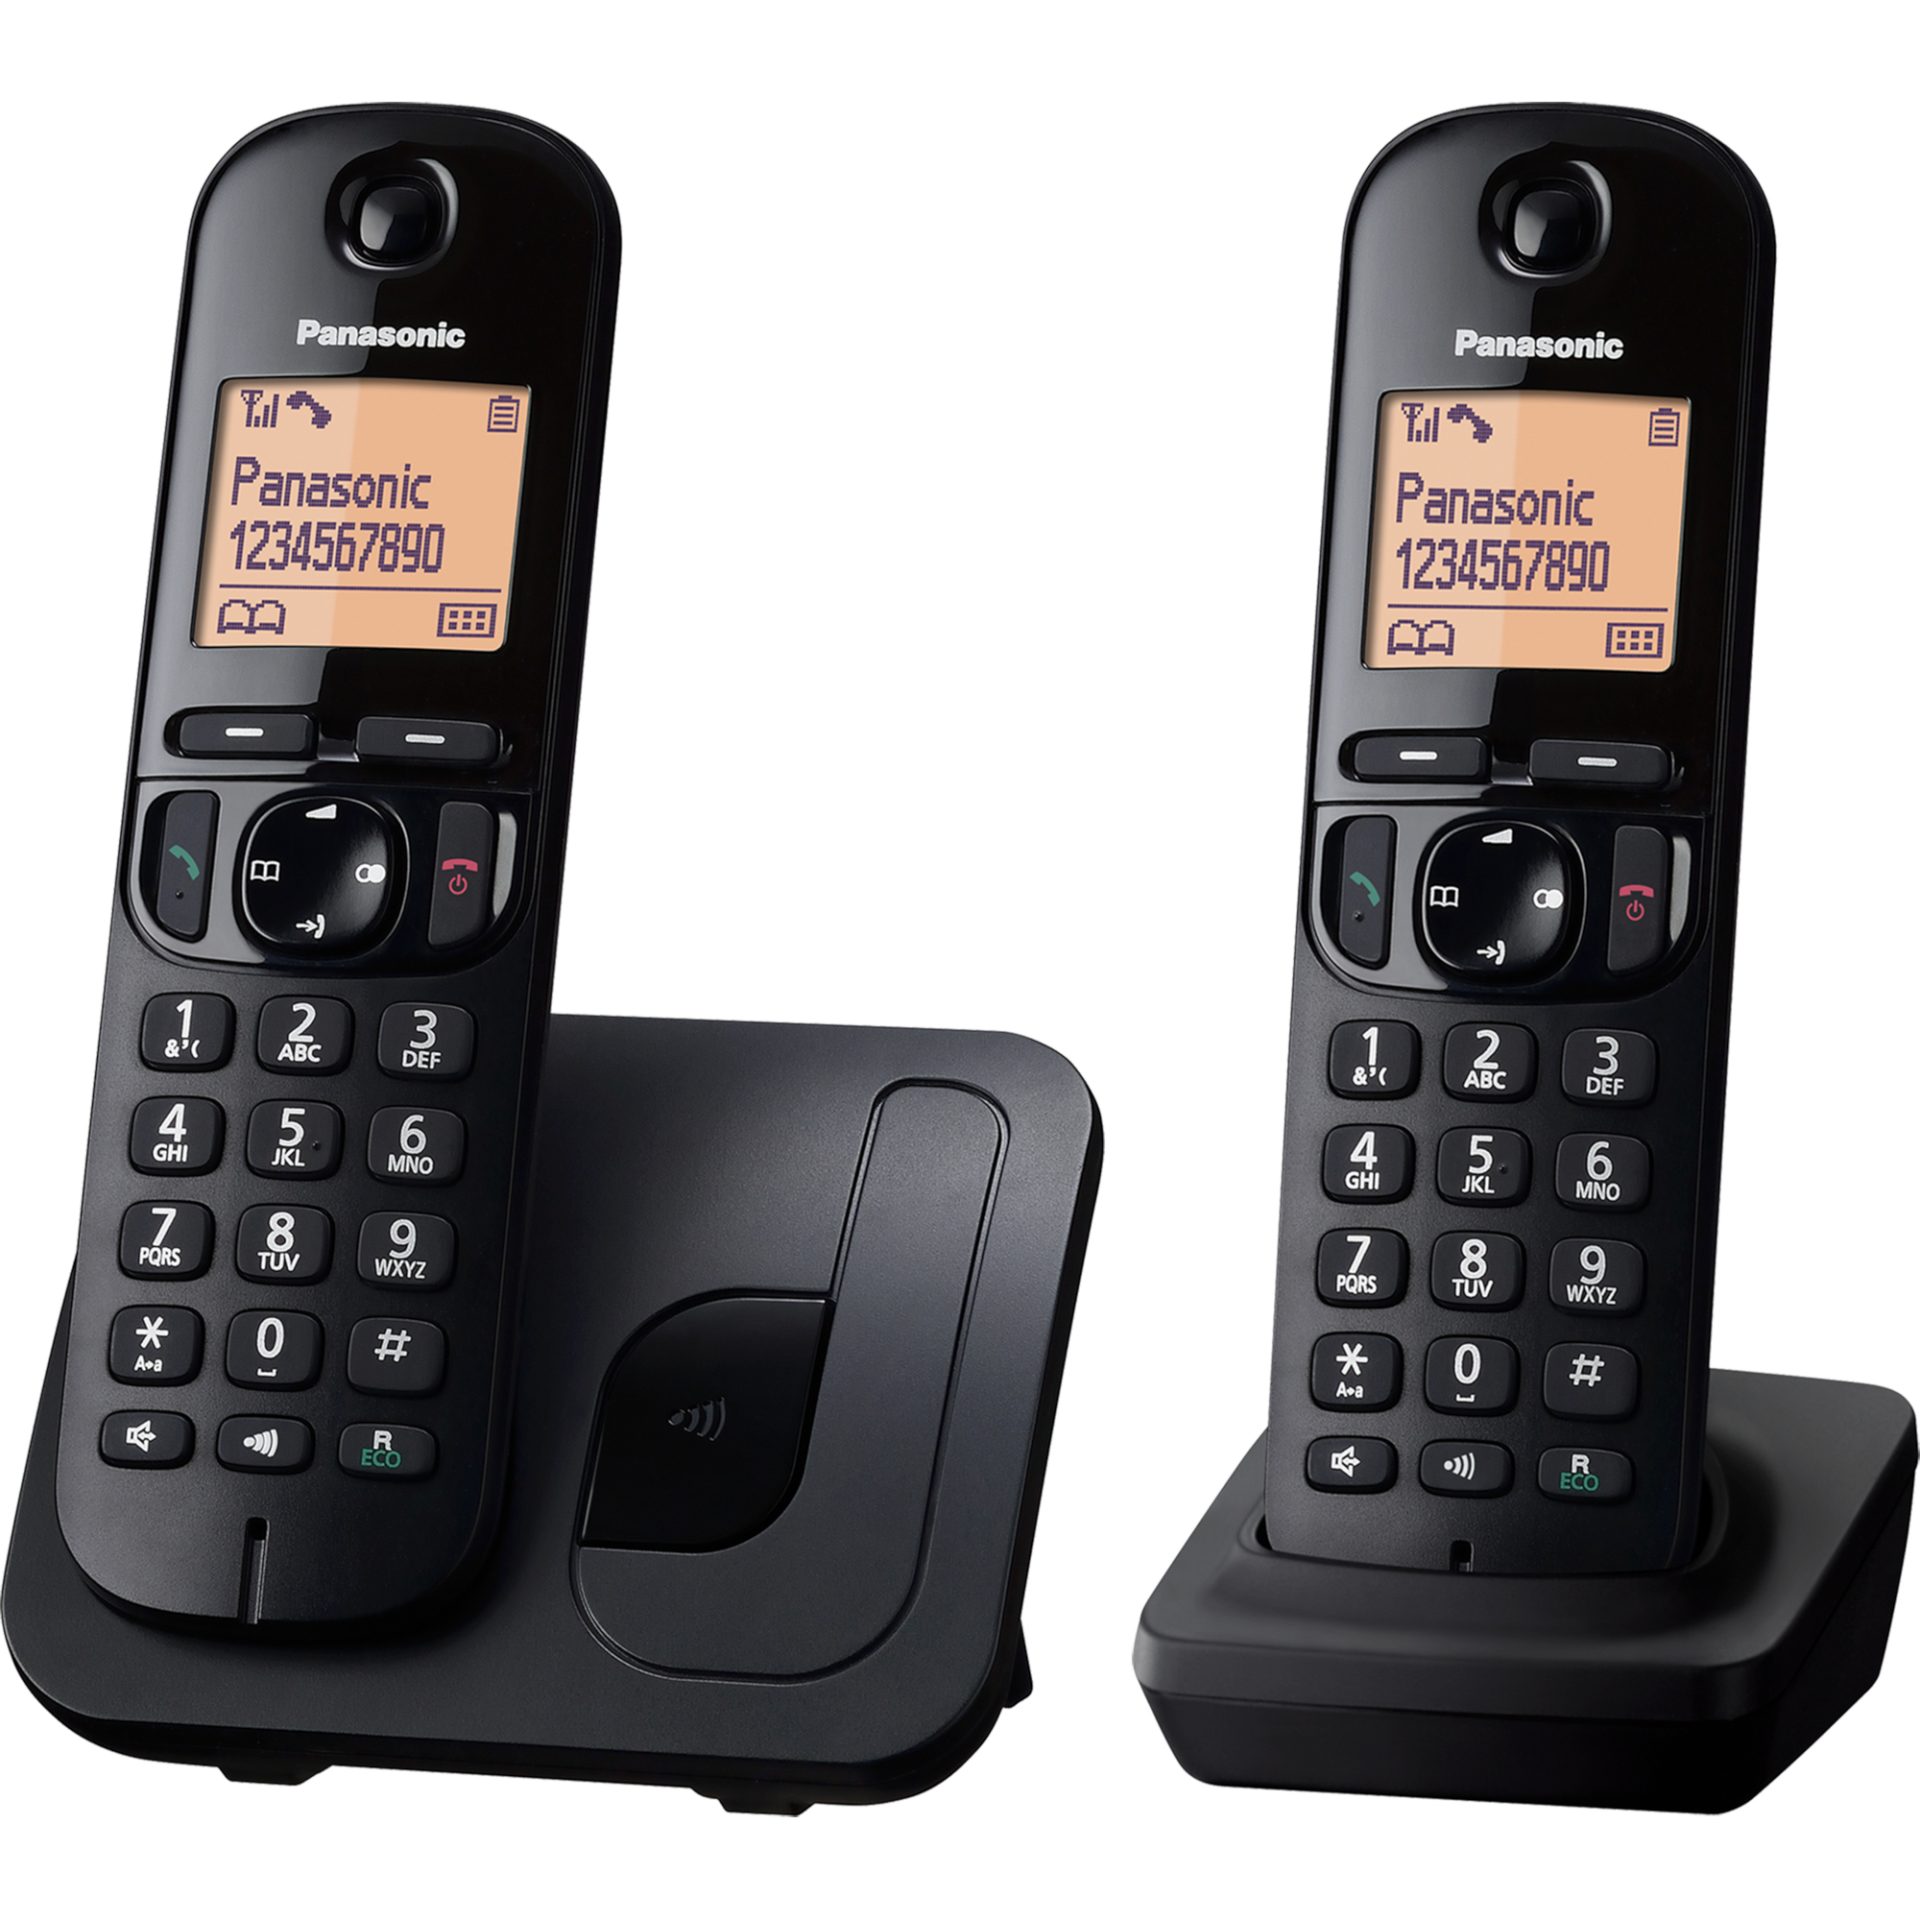 Panasonic KX-TGC212 digitální bezdrátový telefon se 2 sluchátky (režim ECO, blokování nežádoucích hovorů, telefonní seznam pro 50 vstupů), černý